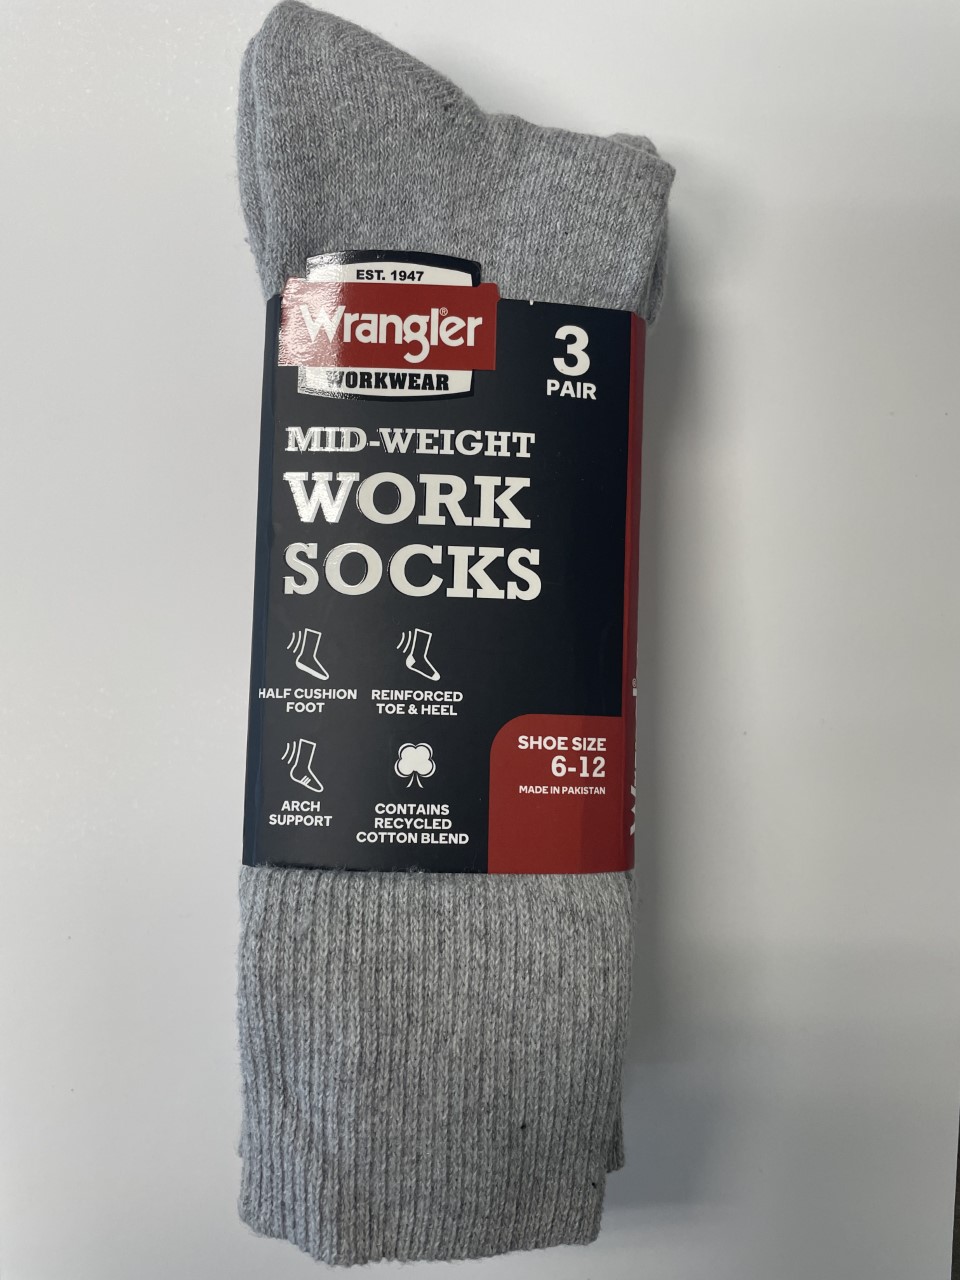 Wrangler Men's Cotton Blend Crew Socks (3-Pack) in the Socks department at